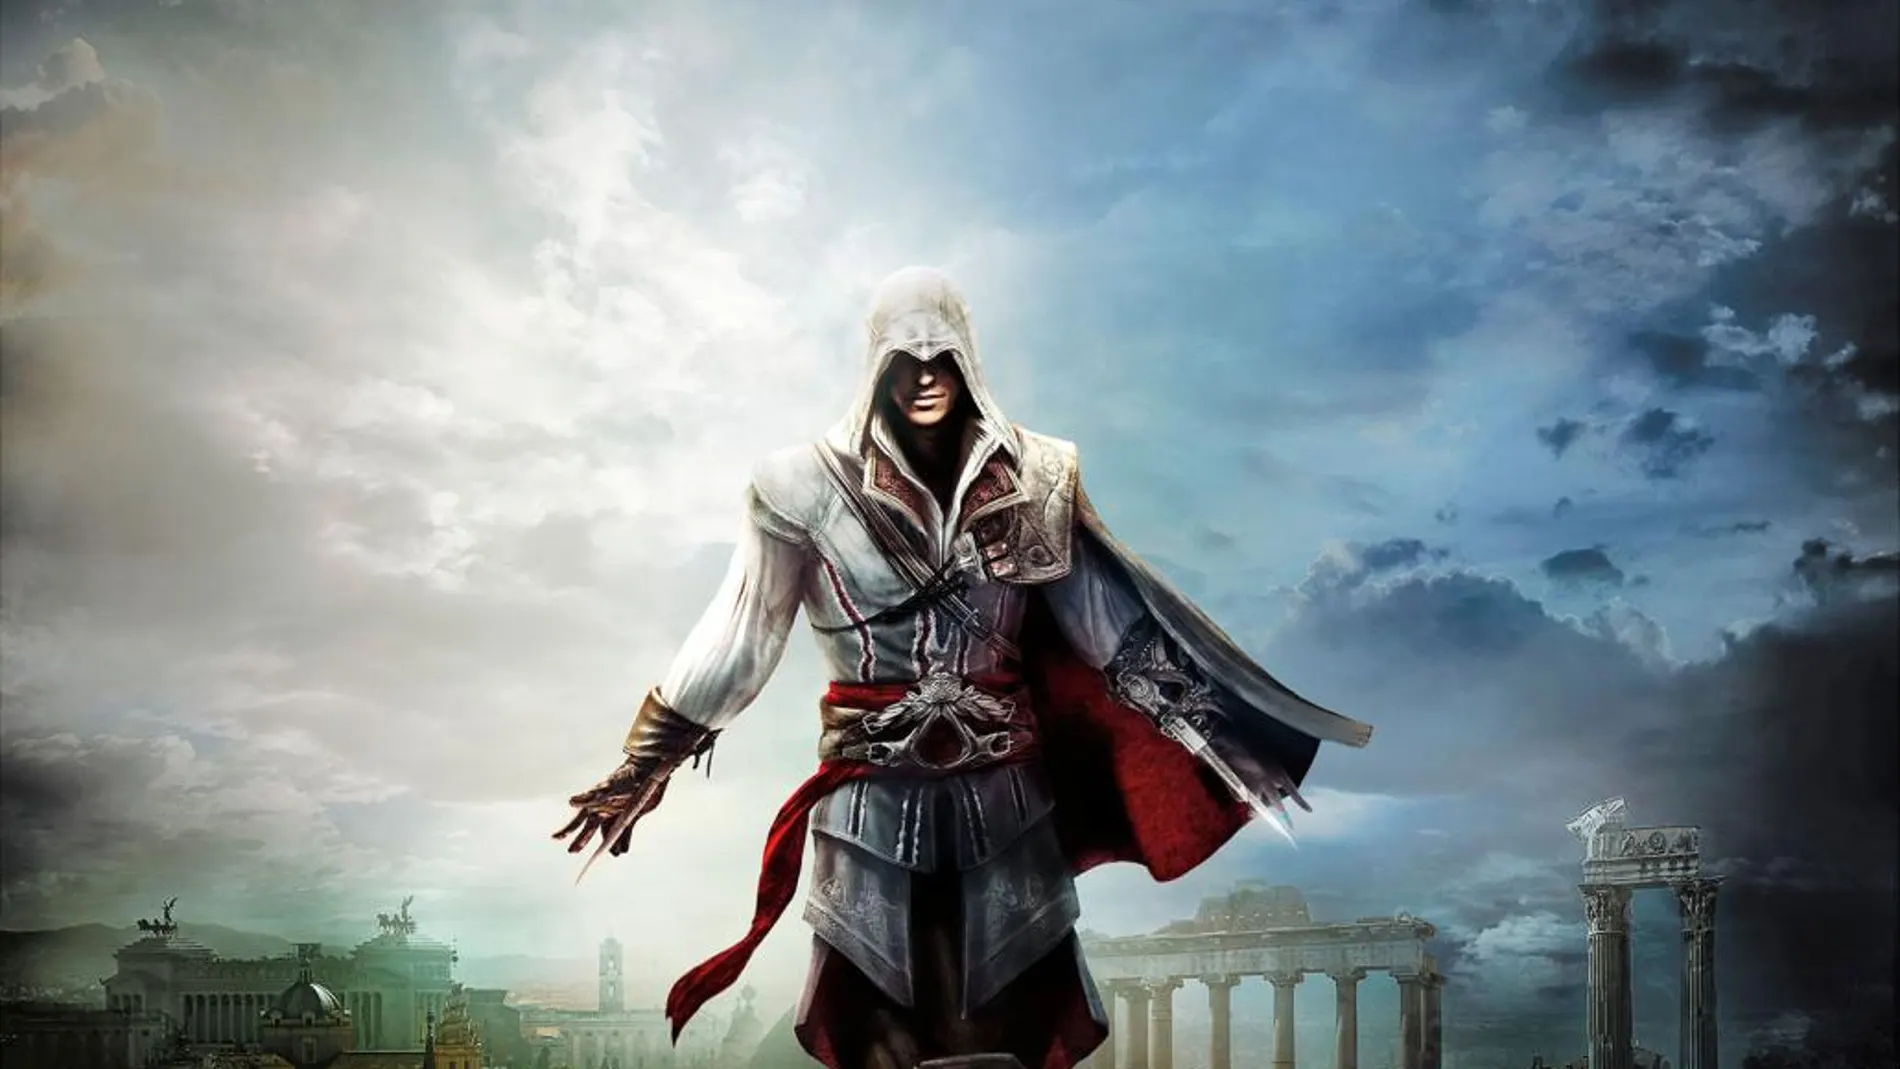 Primeros detalles y fecha de lanzamiento de Assassin’s Creed The Ezio Collection